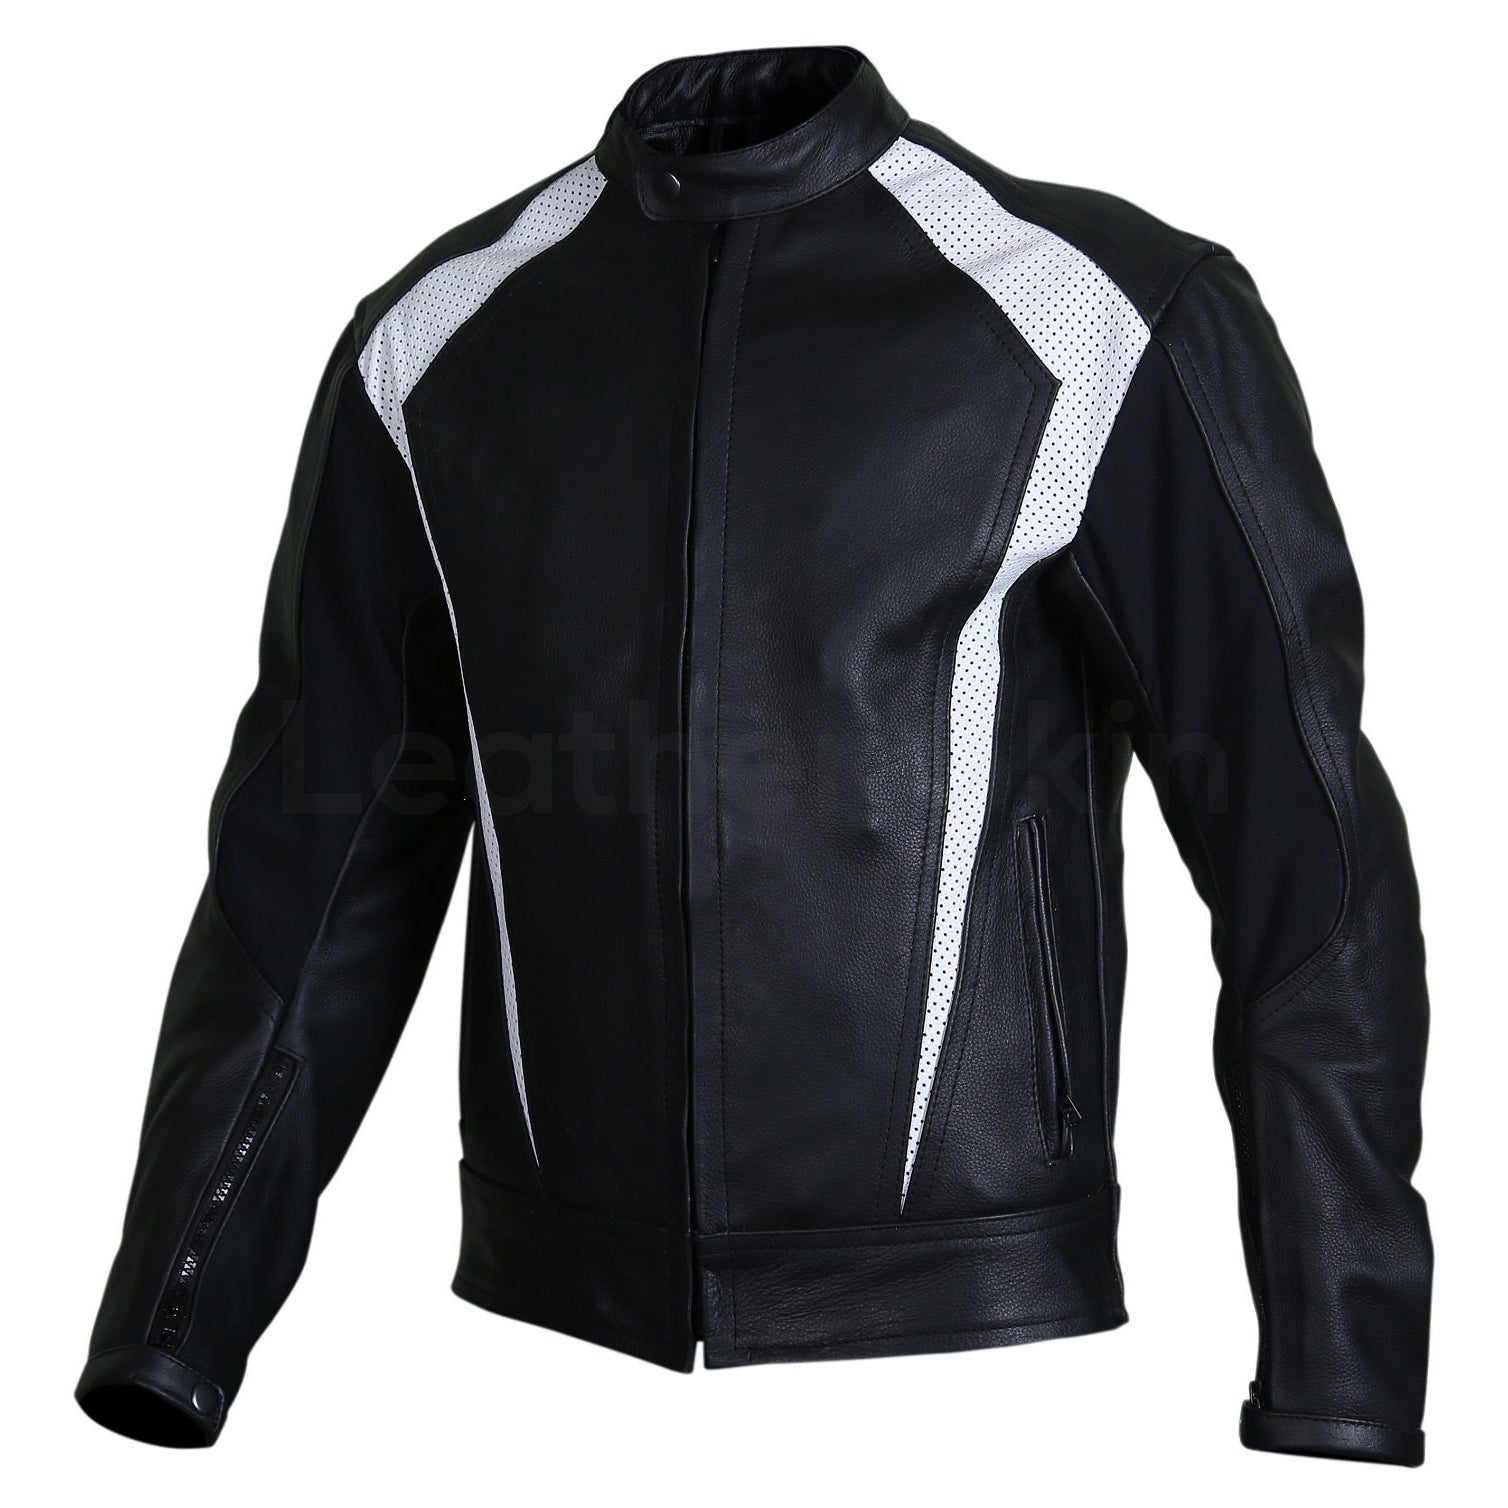 black biker jacket with perforation